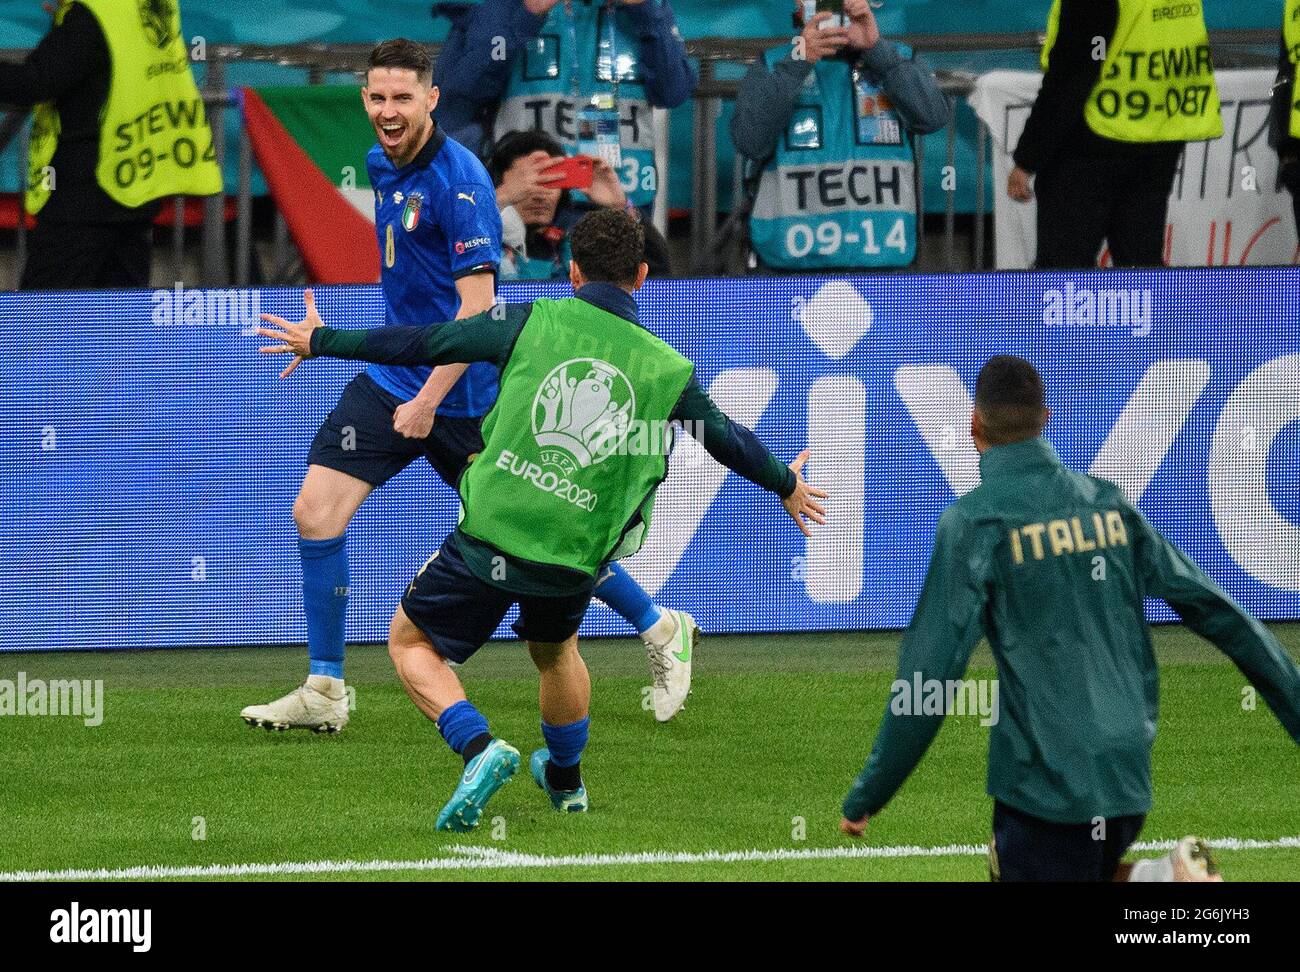 07 juillet 2021 - Italie / Espagne - UEFA Euro 2020 semi-finale - Wembley - Londres Jorghino célèbre la peine de victoire dans la fusillade pour mettre l'Italie dans l'EURO 2020 final. Crédit photo : © Mark pain / Alamy Live News Banque D'Images